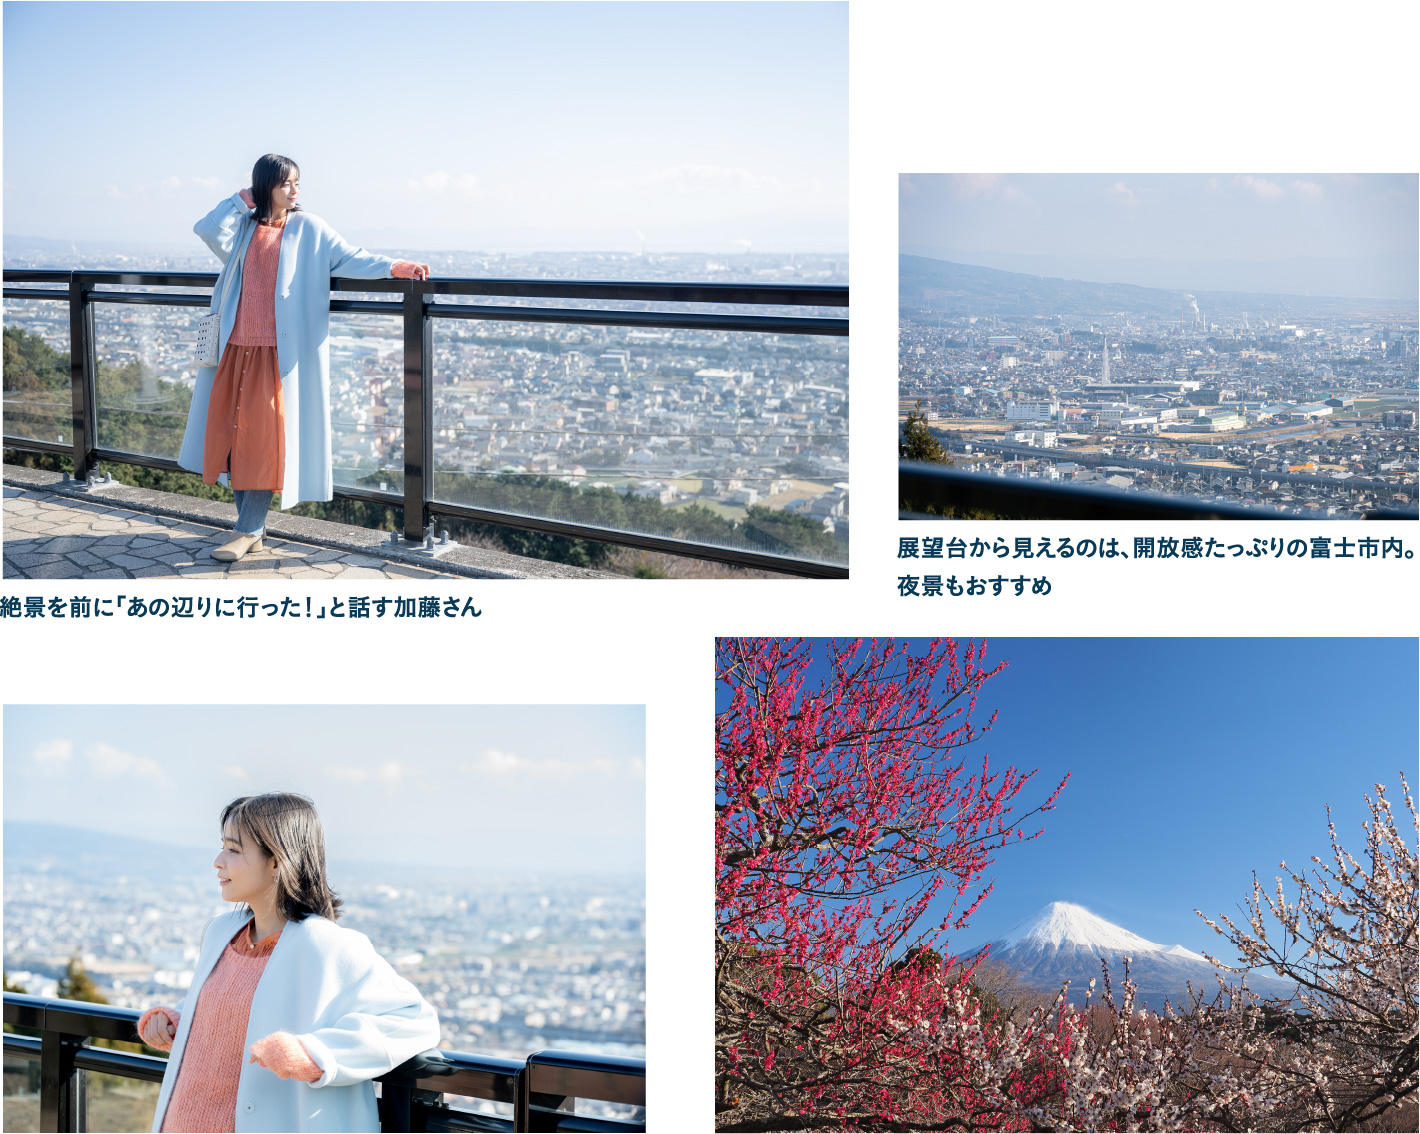 富士市を見渡せる絶景スポット岩本山公園でプチハイキングを楽しむ